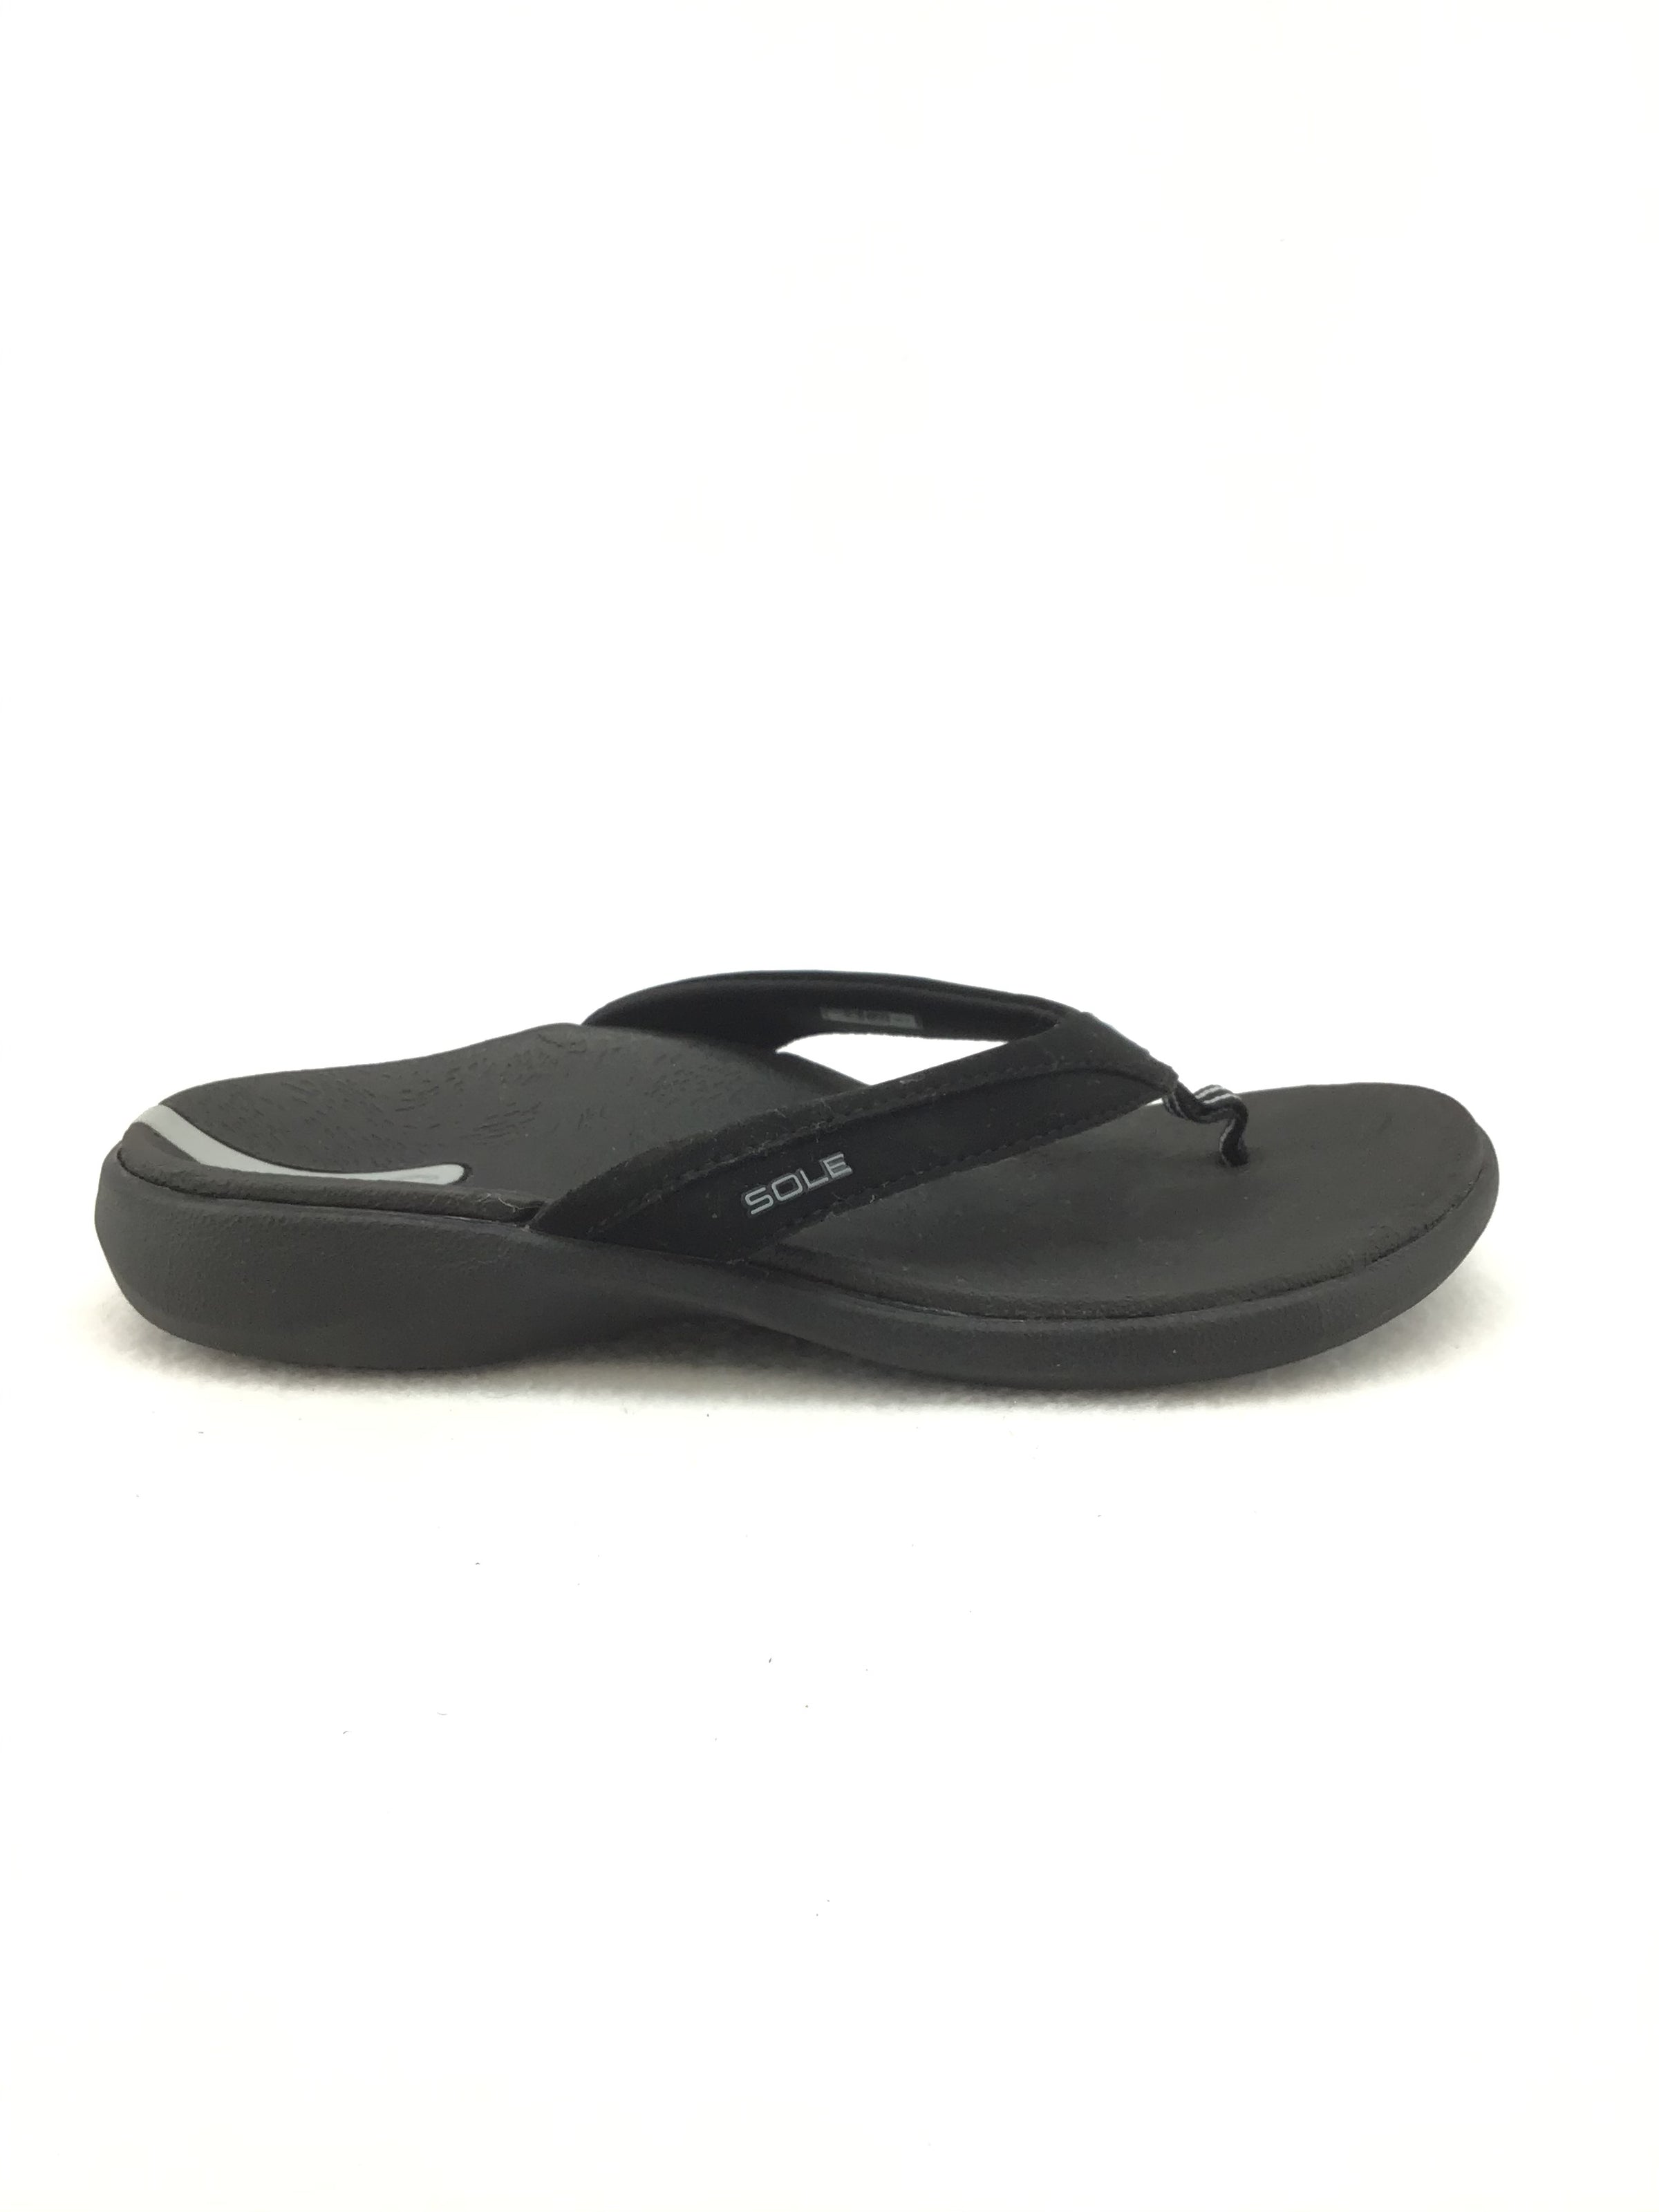 Sole Sport Flip Flop Sandals Size 7